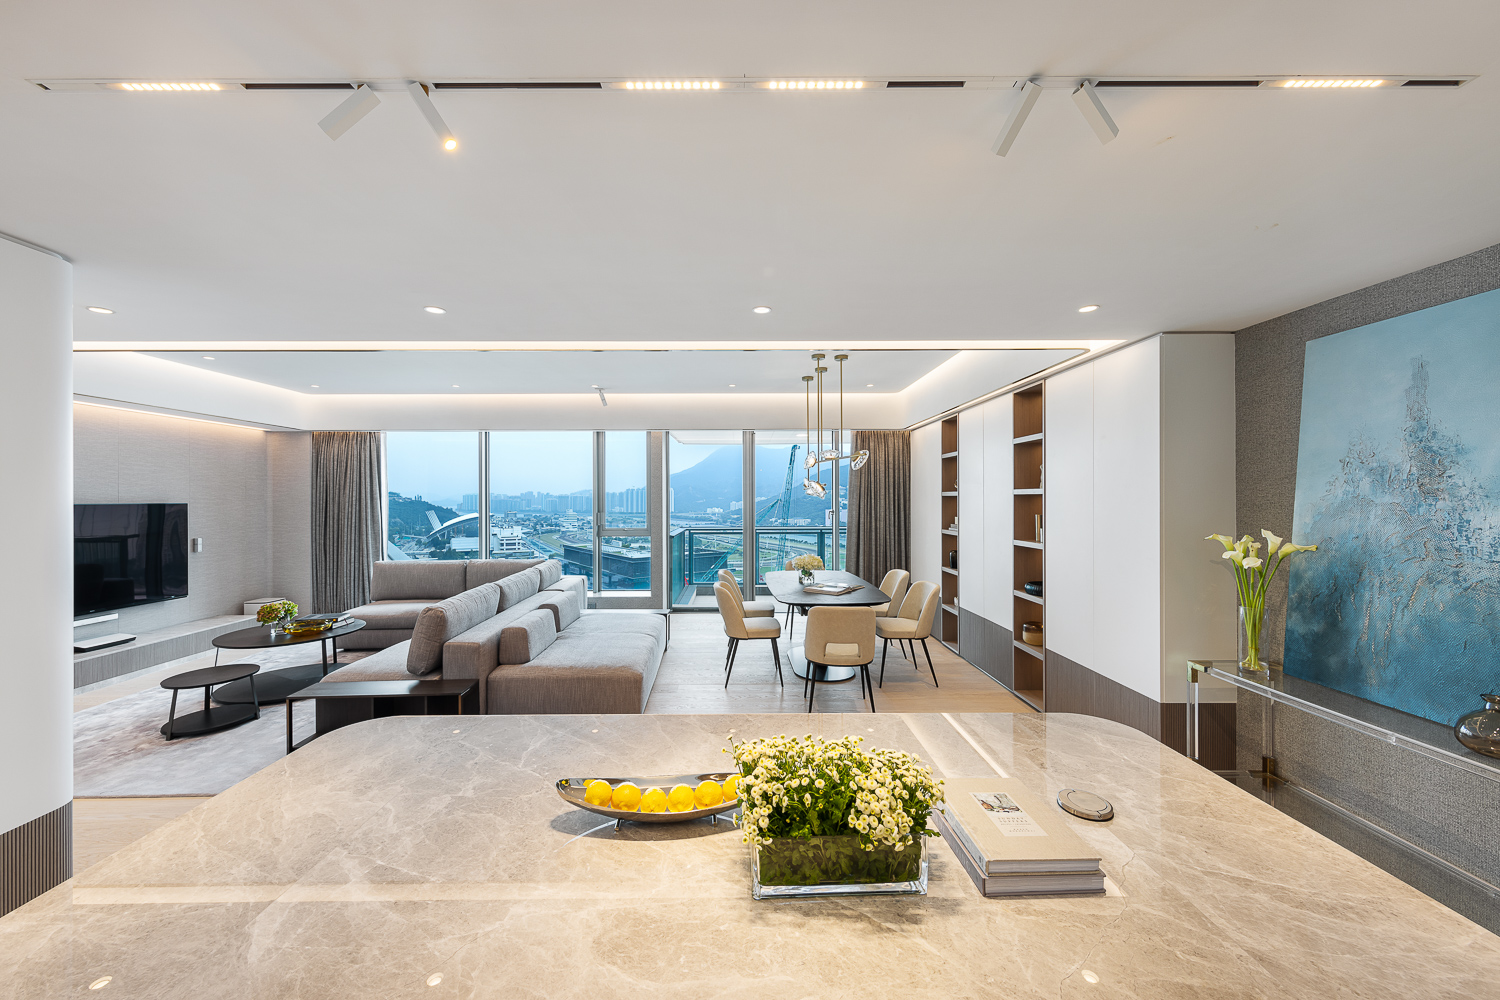 Matthew Li - Grande Interior Design - The Palazzo